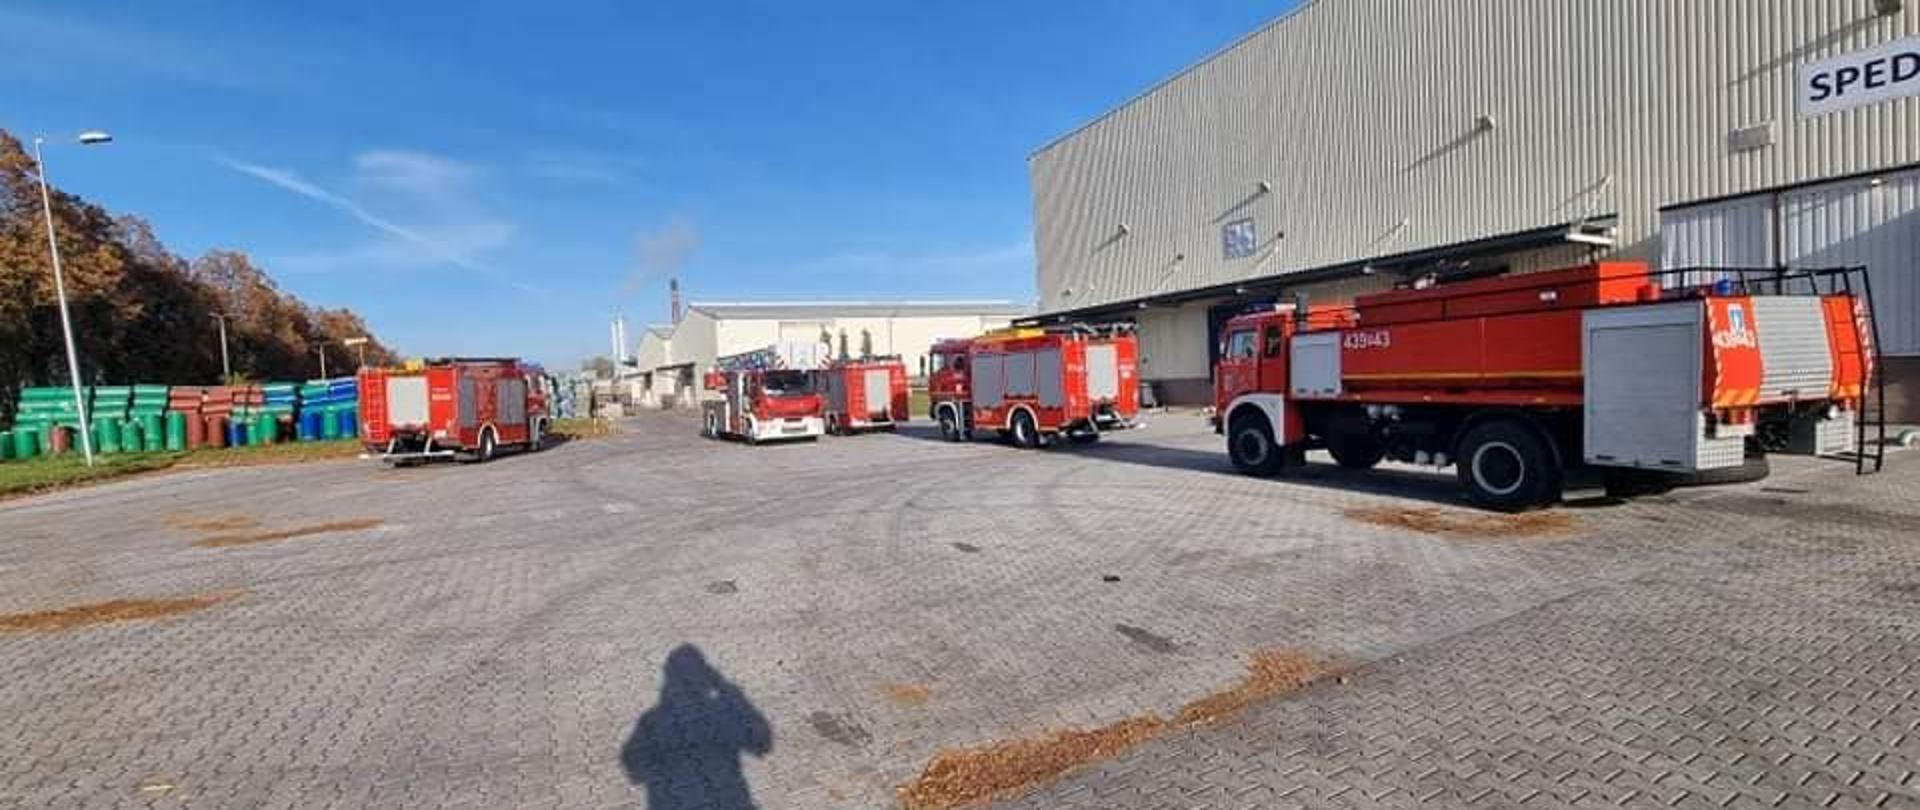 Zdjęcie przedstawia samochody pożarnicze stojące na placu zakładu produkcyjnego.